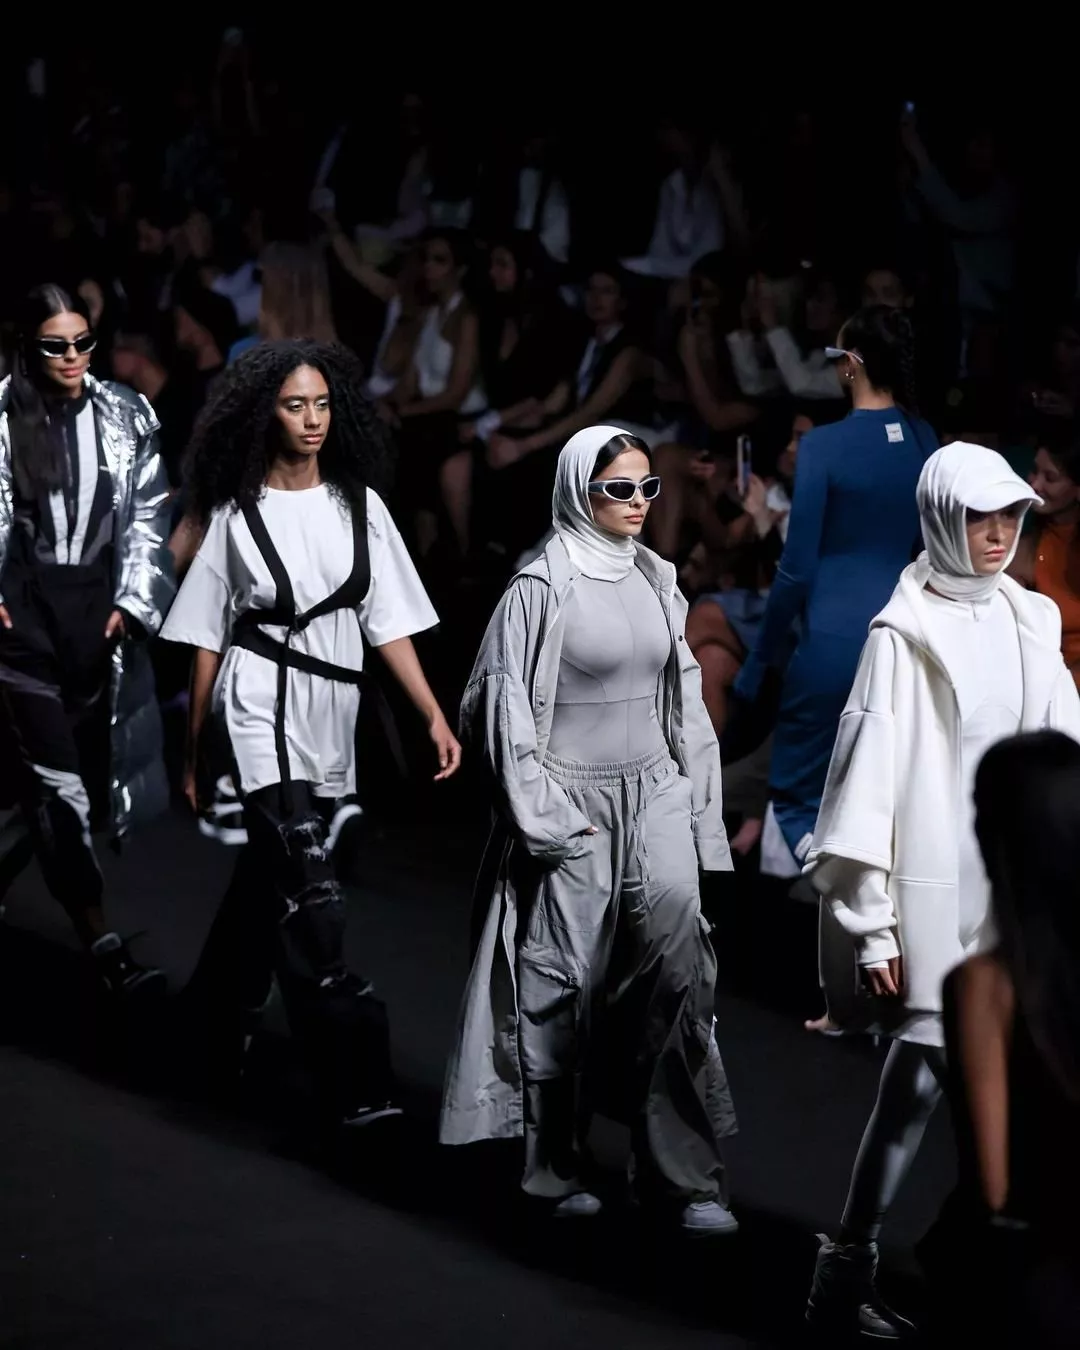 أبرز ما جاء في عروض أسبوع الموضة العربي لمجموعات الخياطة الراقية لخريف 2023 والأزياء الجاهزة لربيع 2023